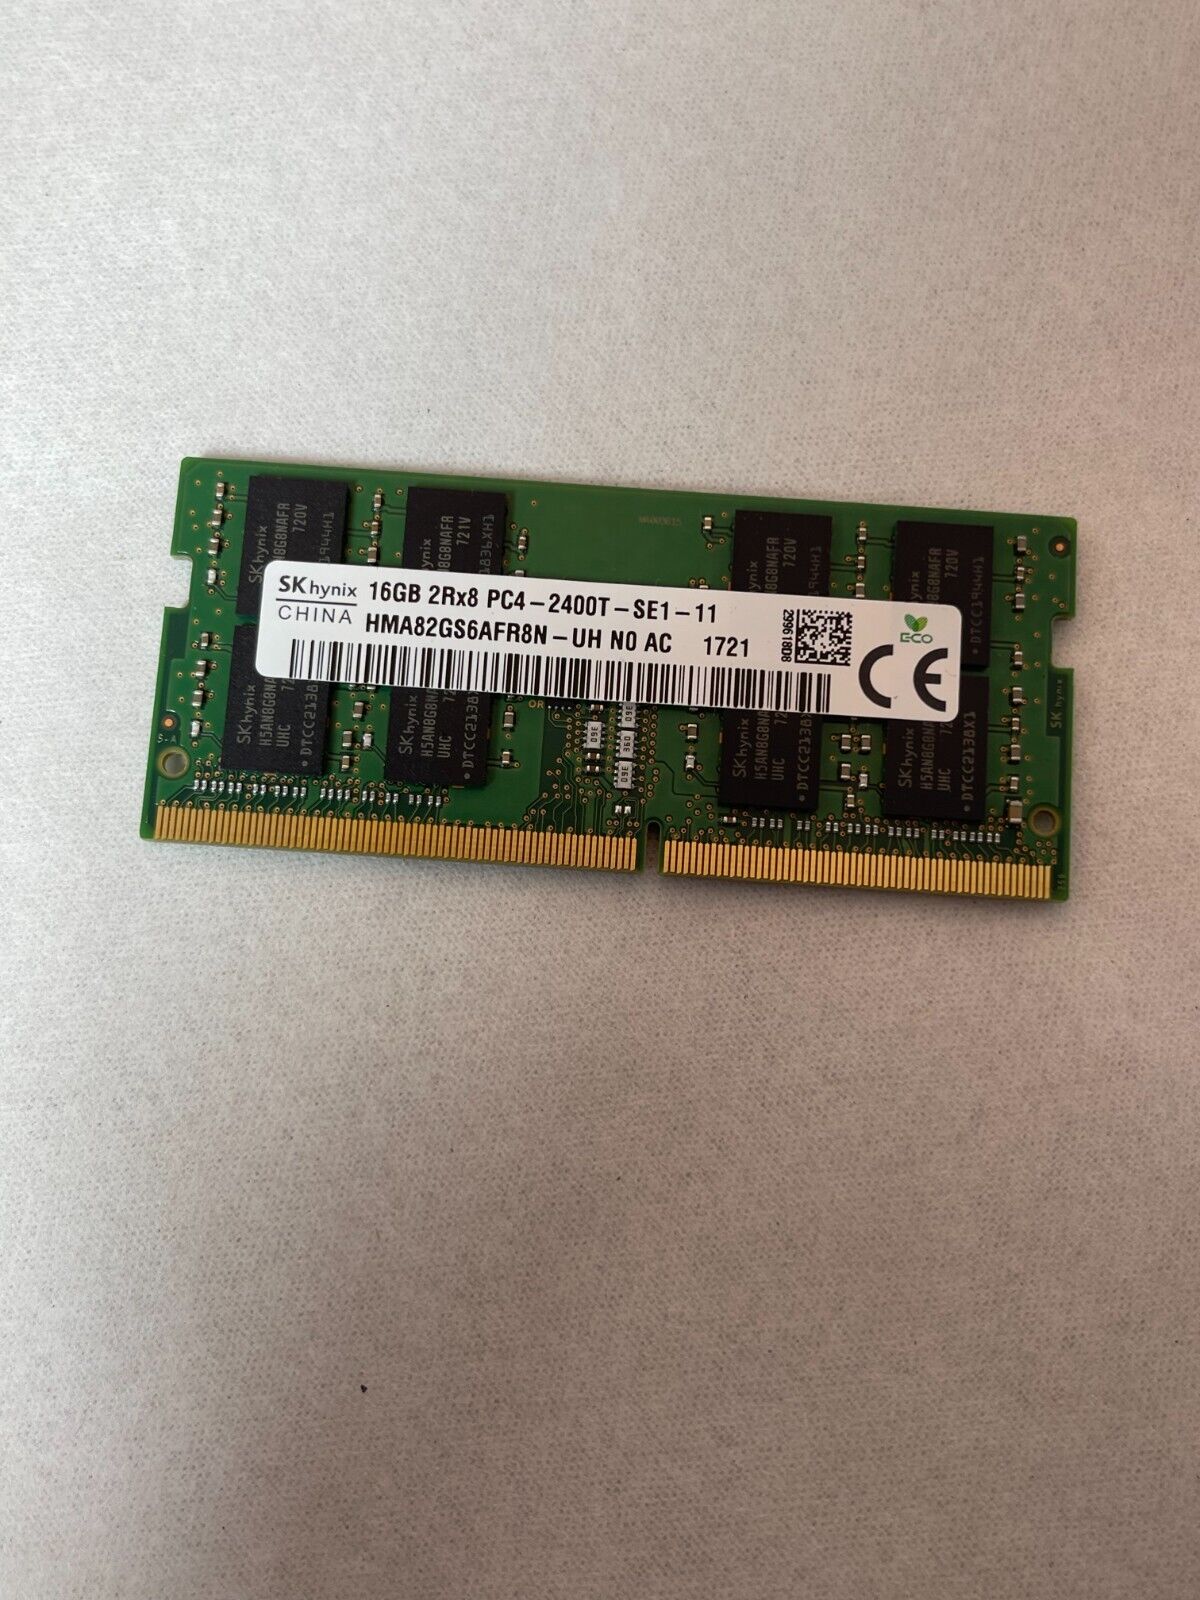 Hynix 16GB 2Rx8 PC4-2400T SODIMM Laptop RAM Memory HMA82GS6AFR8N-UH N0 AC